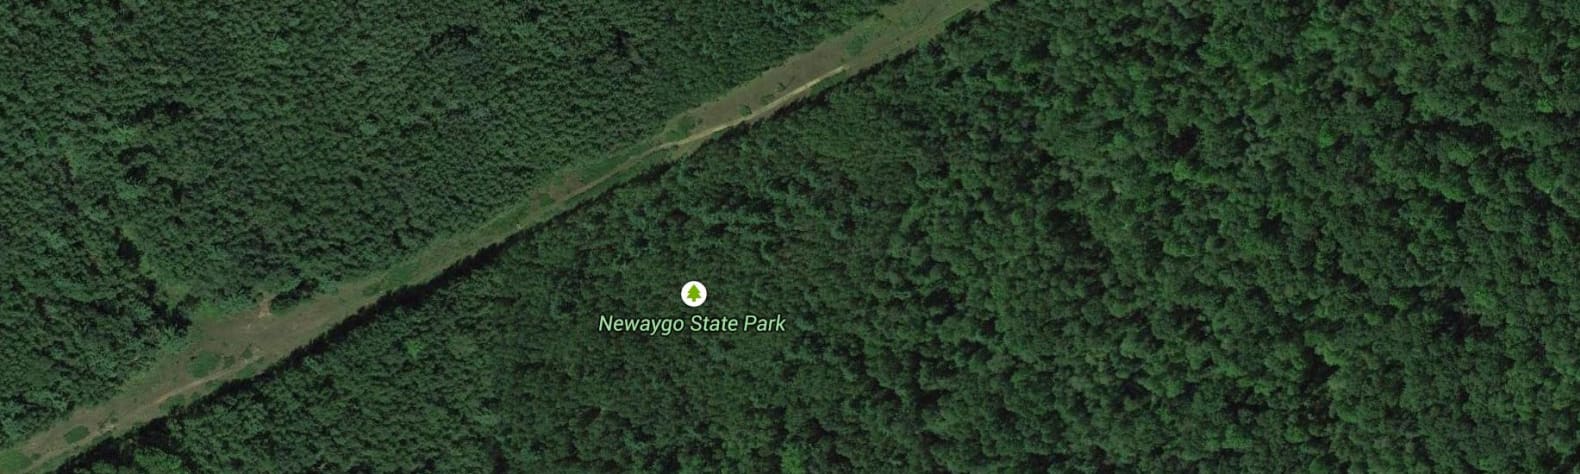 Newaygo State Park